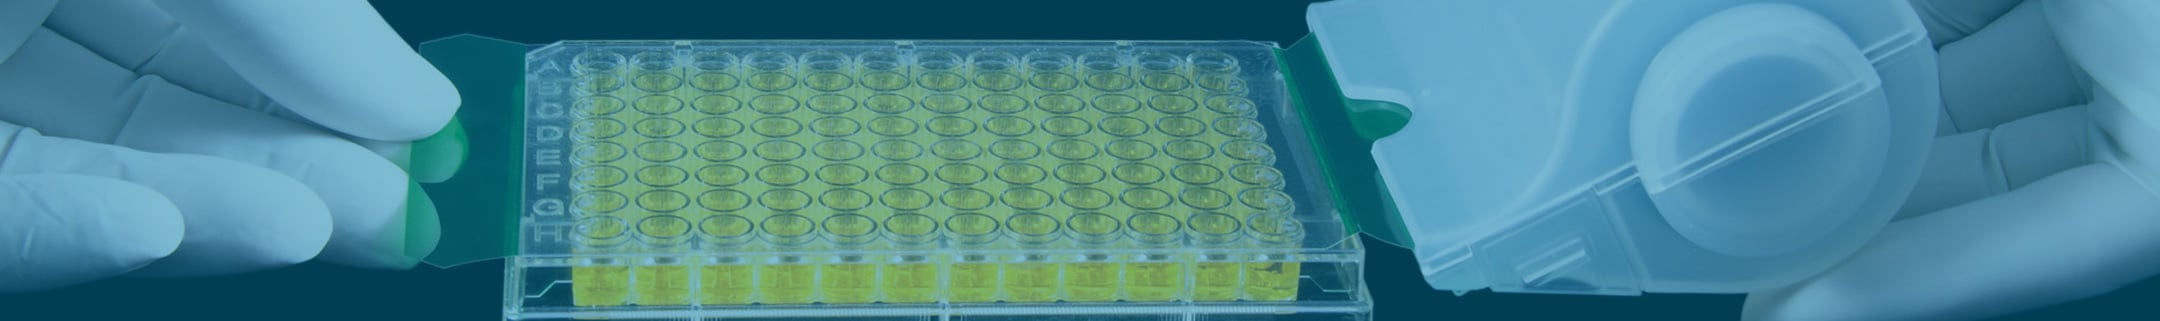 PCR Plate Sealing